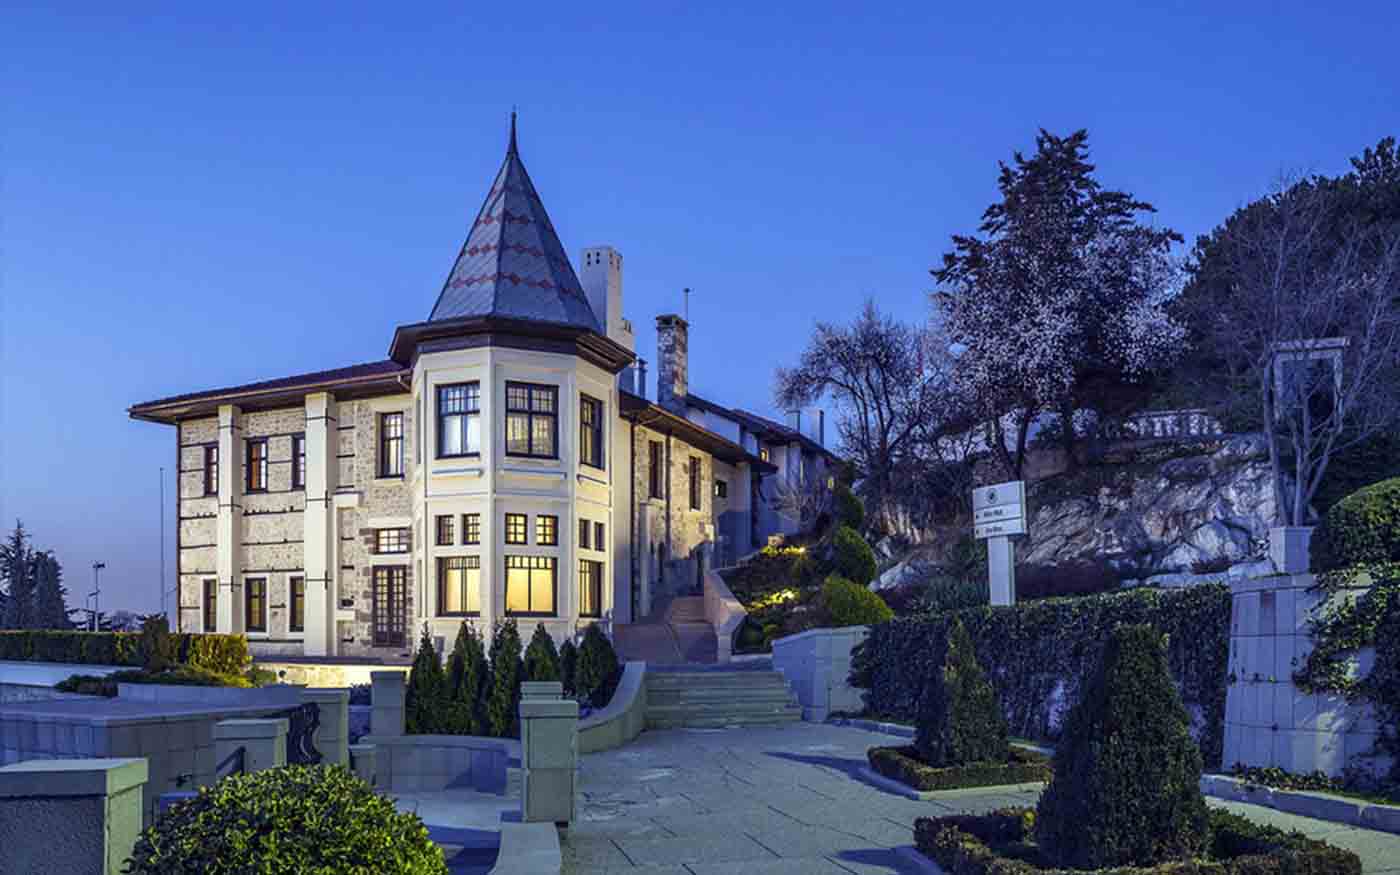 Atatürk Presidential Residence Museum